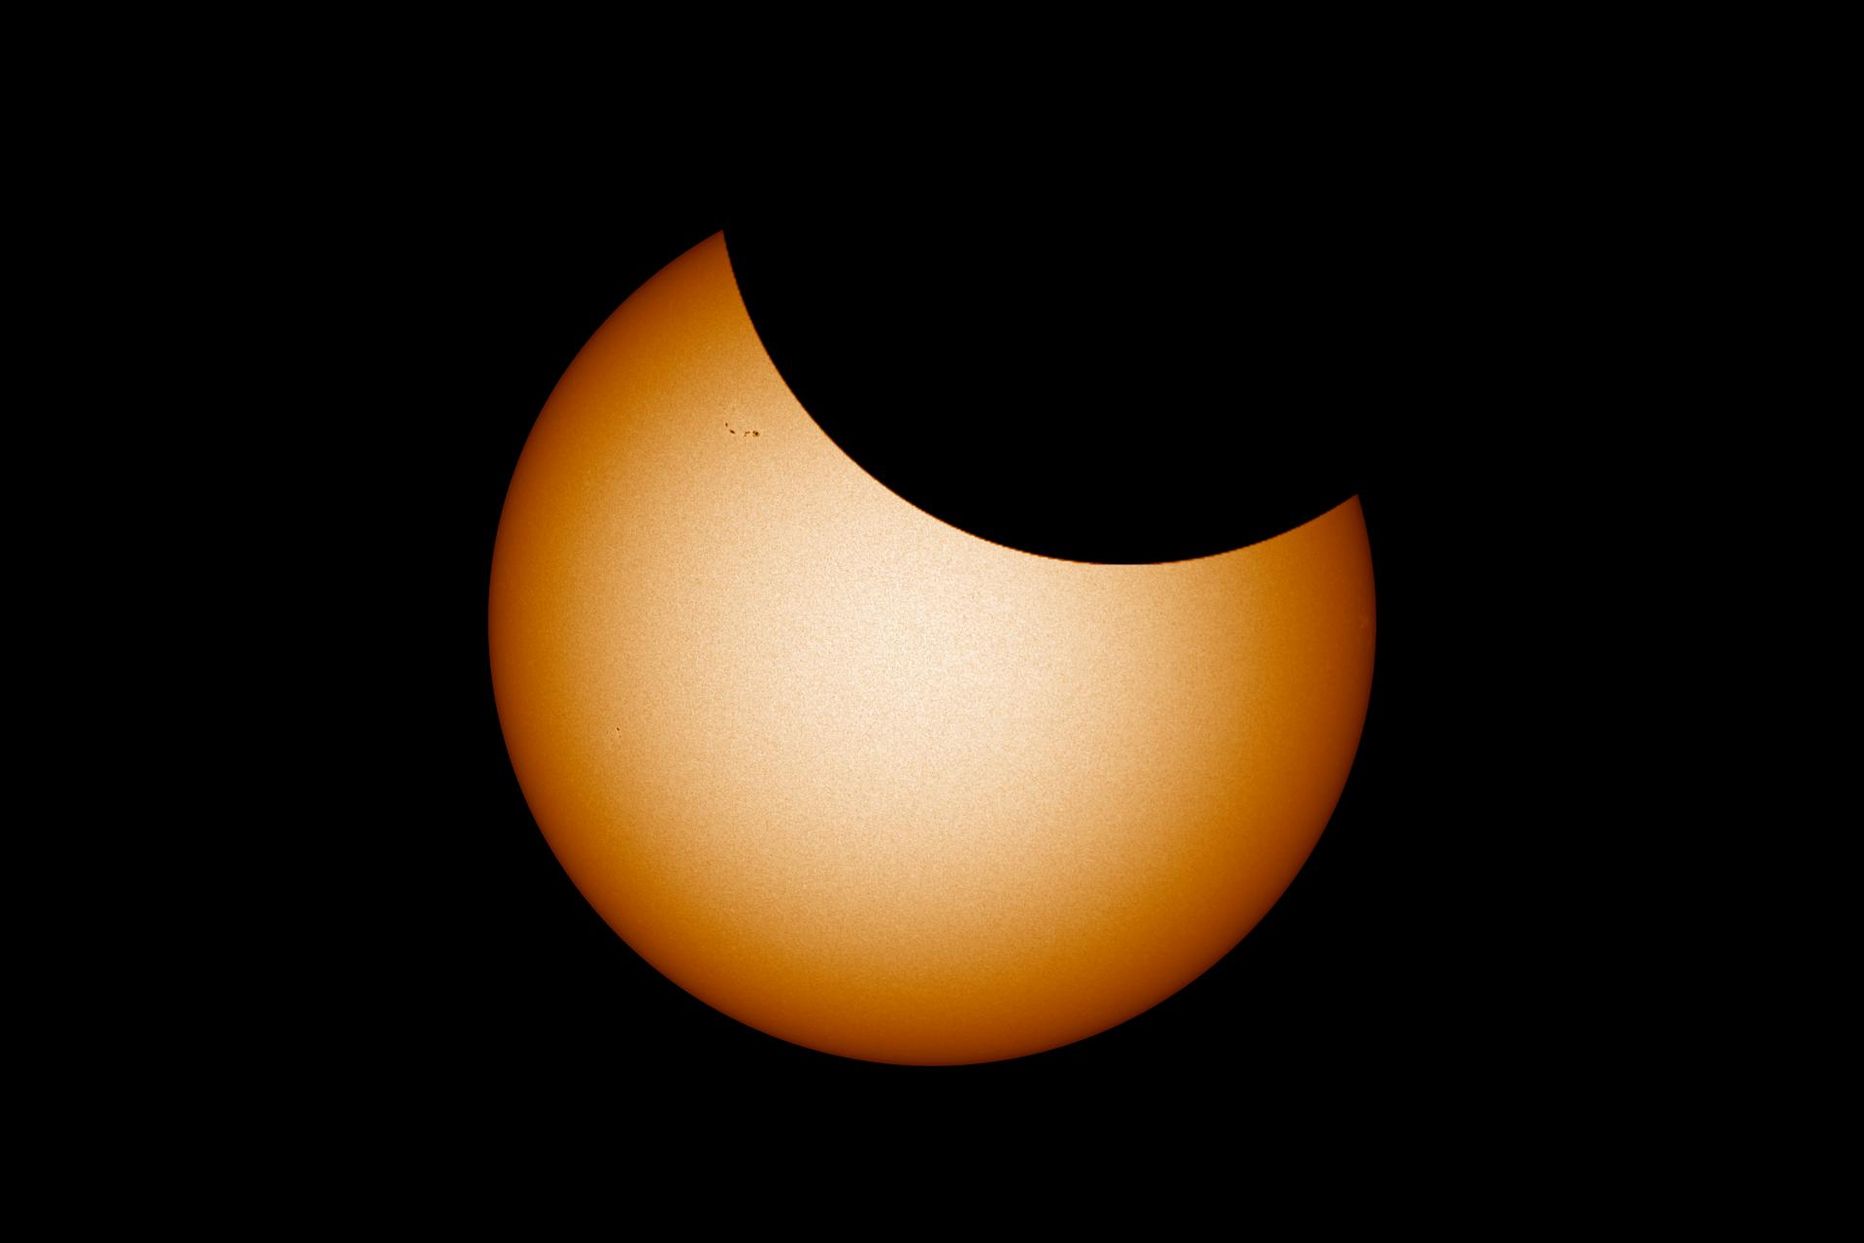 Selline võiks teleskoobis välja näha homne päikesevarjutus oma tipphetkel. Foto Päikesest on tehtud 30. mail ning sellel on näha ka mõned pisikesed päikeseplekid, mis on homseks liikunud Päikese paremasse serva või sootuks kadunud. Loodetavasti on selleks ajaks mõni uus juurde tekkinud. 